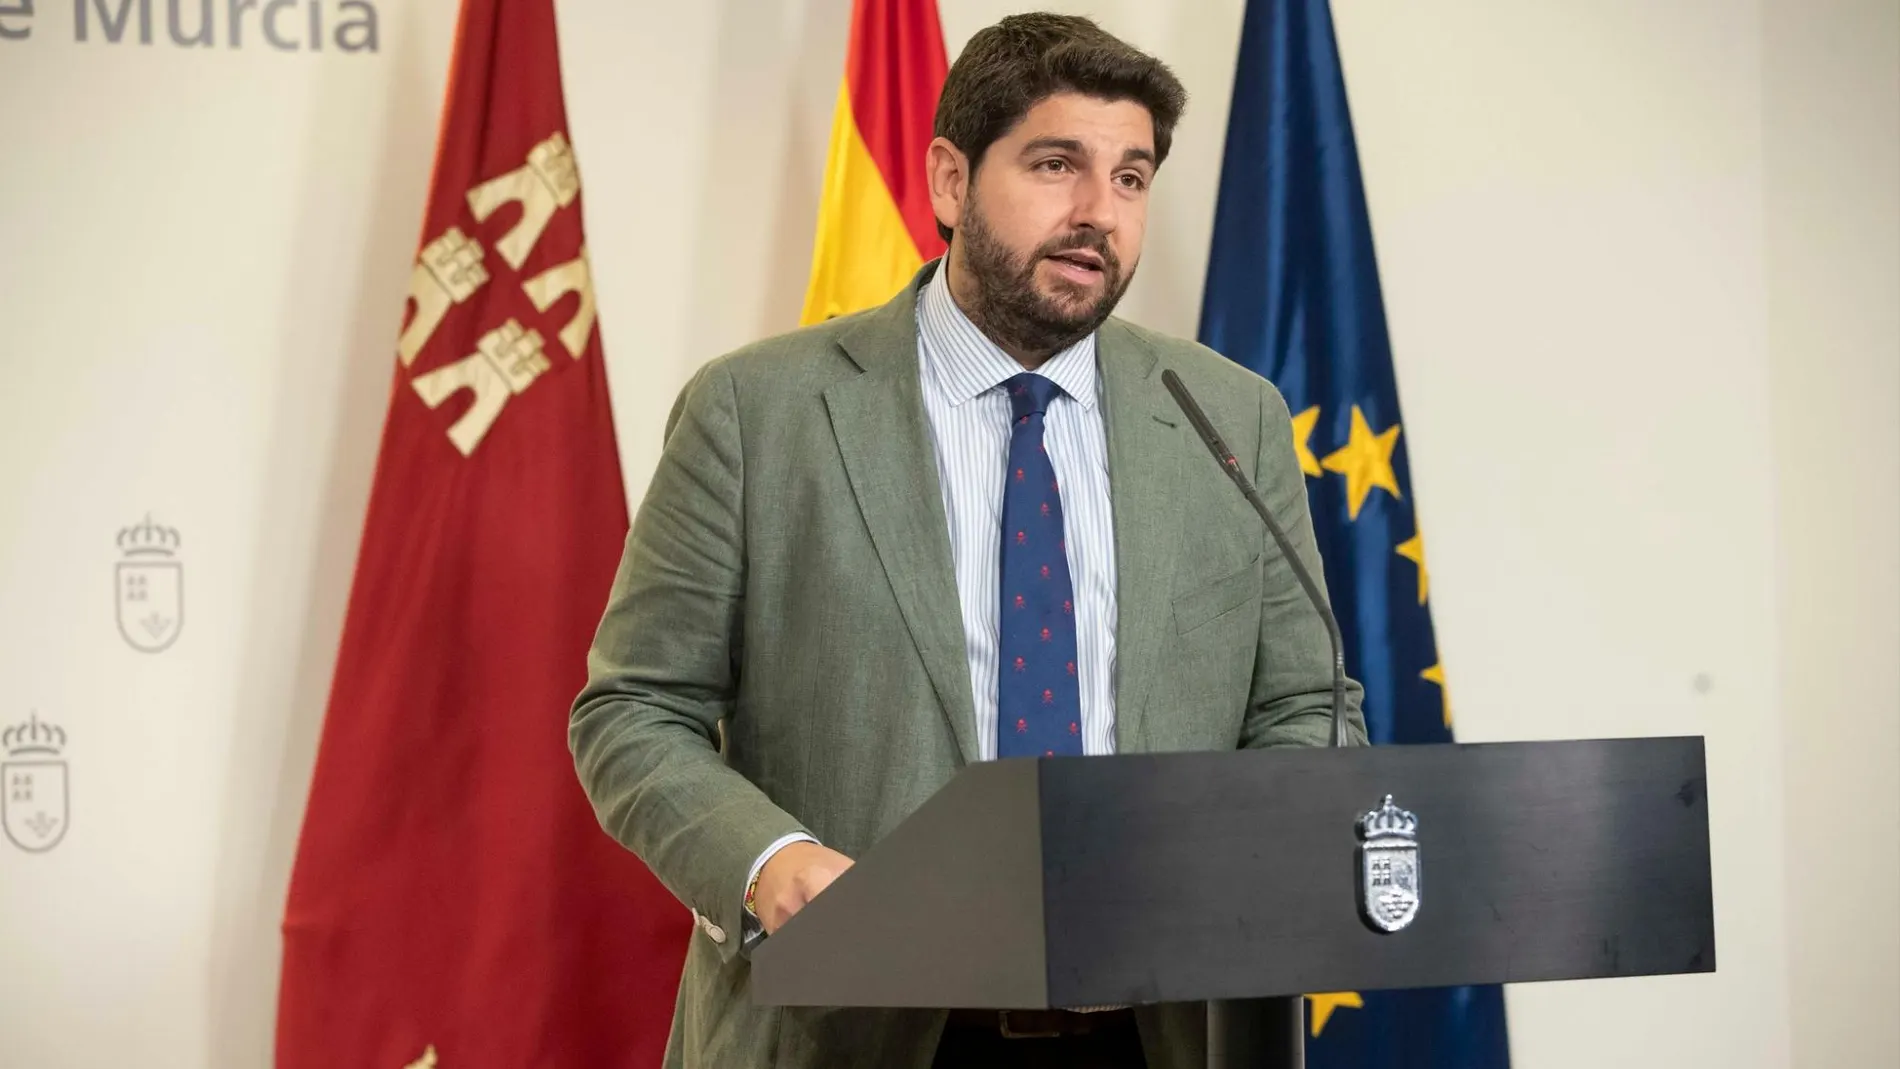 El líder regional del PP, Fernando López Miras, tendrá que buscar el consenso entre Cs y Vox para conseguir ser investido la próxima semana como presidente de la Región. LA RAZÓN